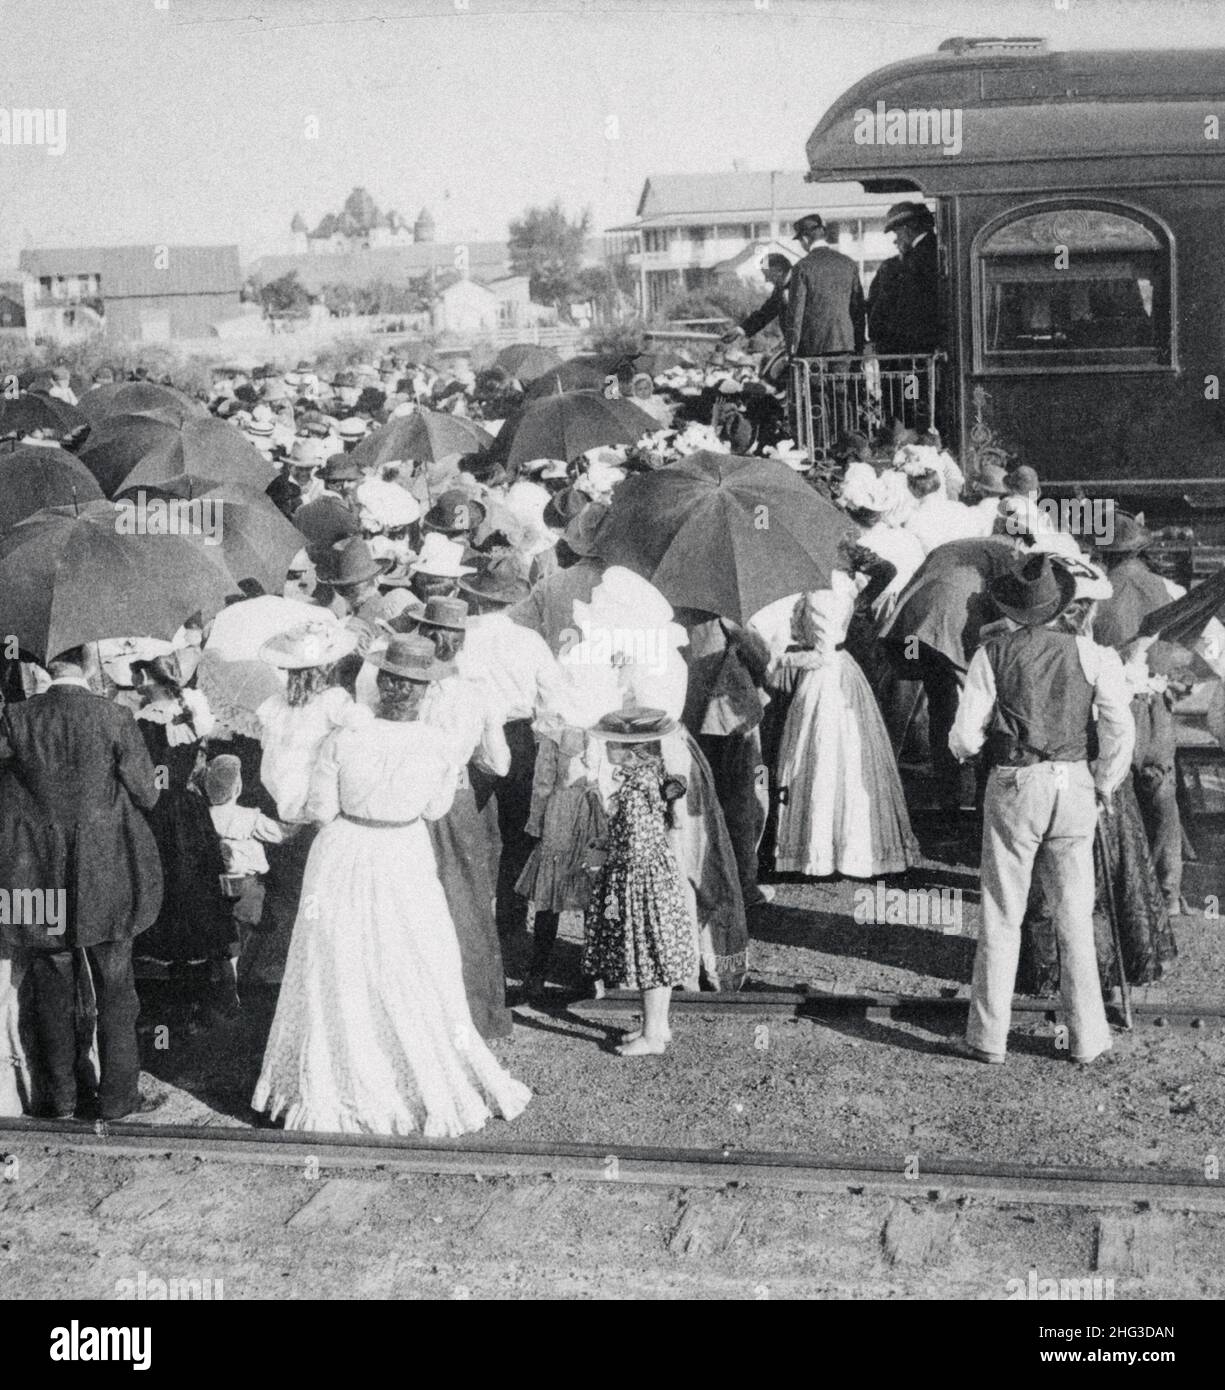 Präsident McKinleys erster Halt an der mexikanischen Grenze. Del Rio, Texas, USA. 1900s Präsident McKinley mit anderen hinter dem Zug und der Menge. Stockfoto